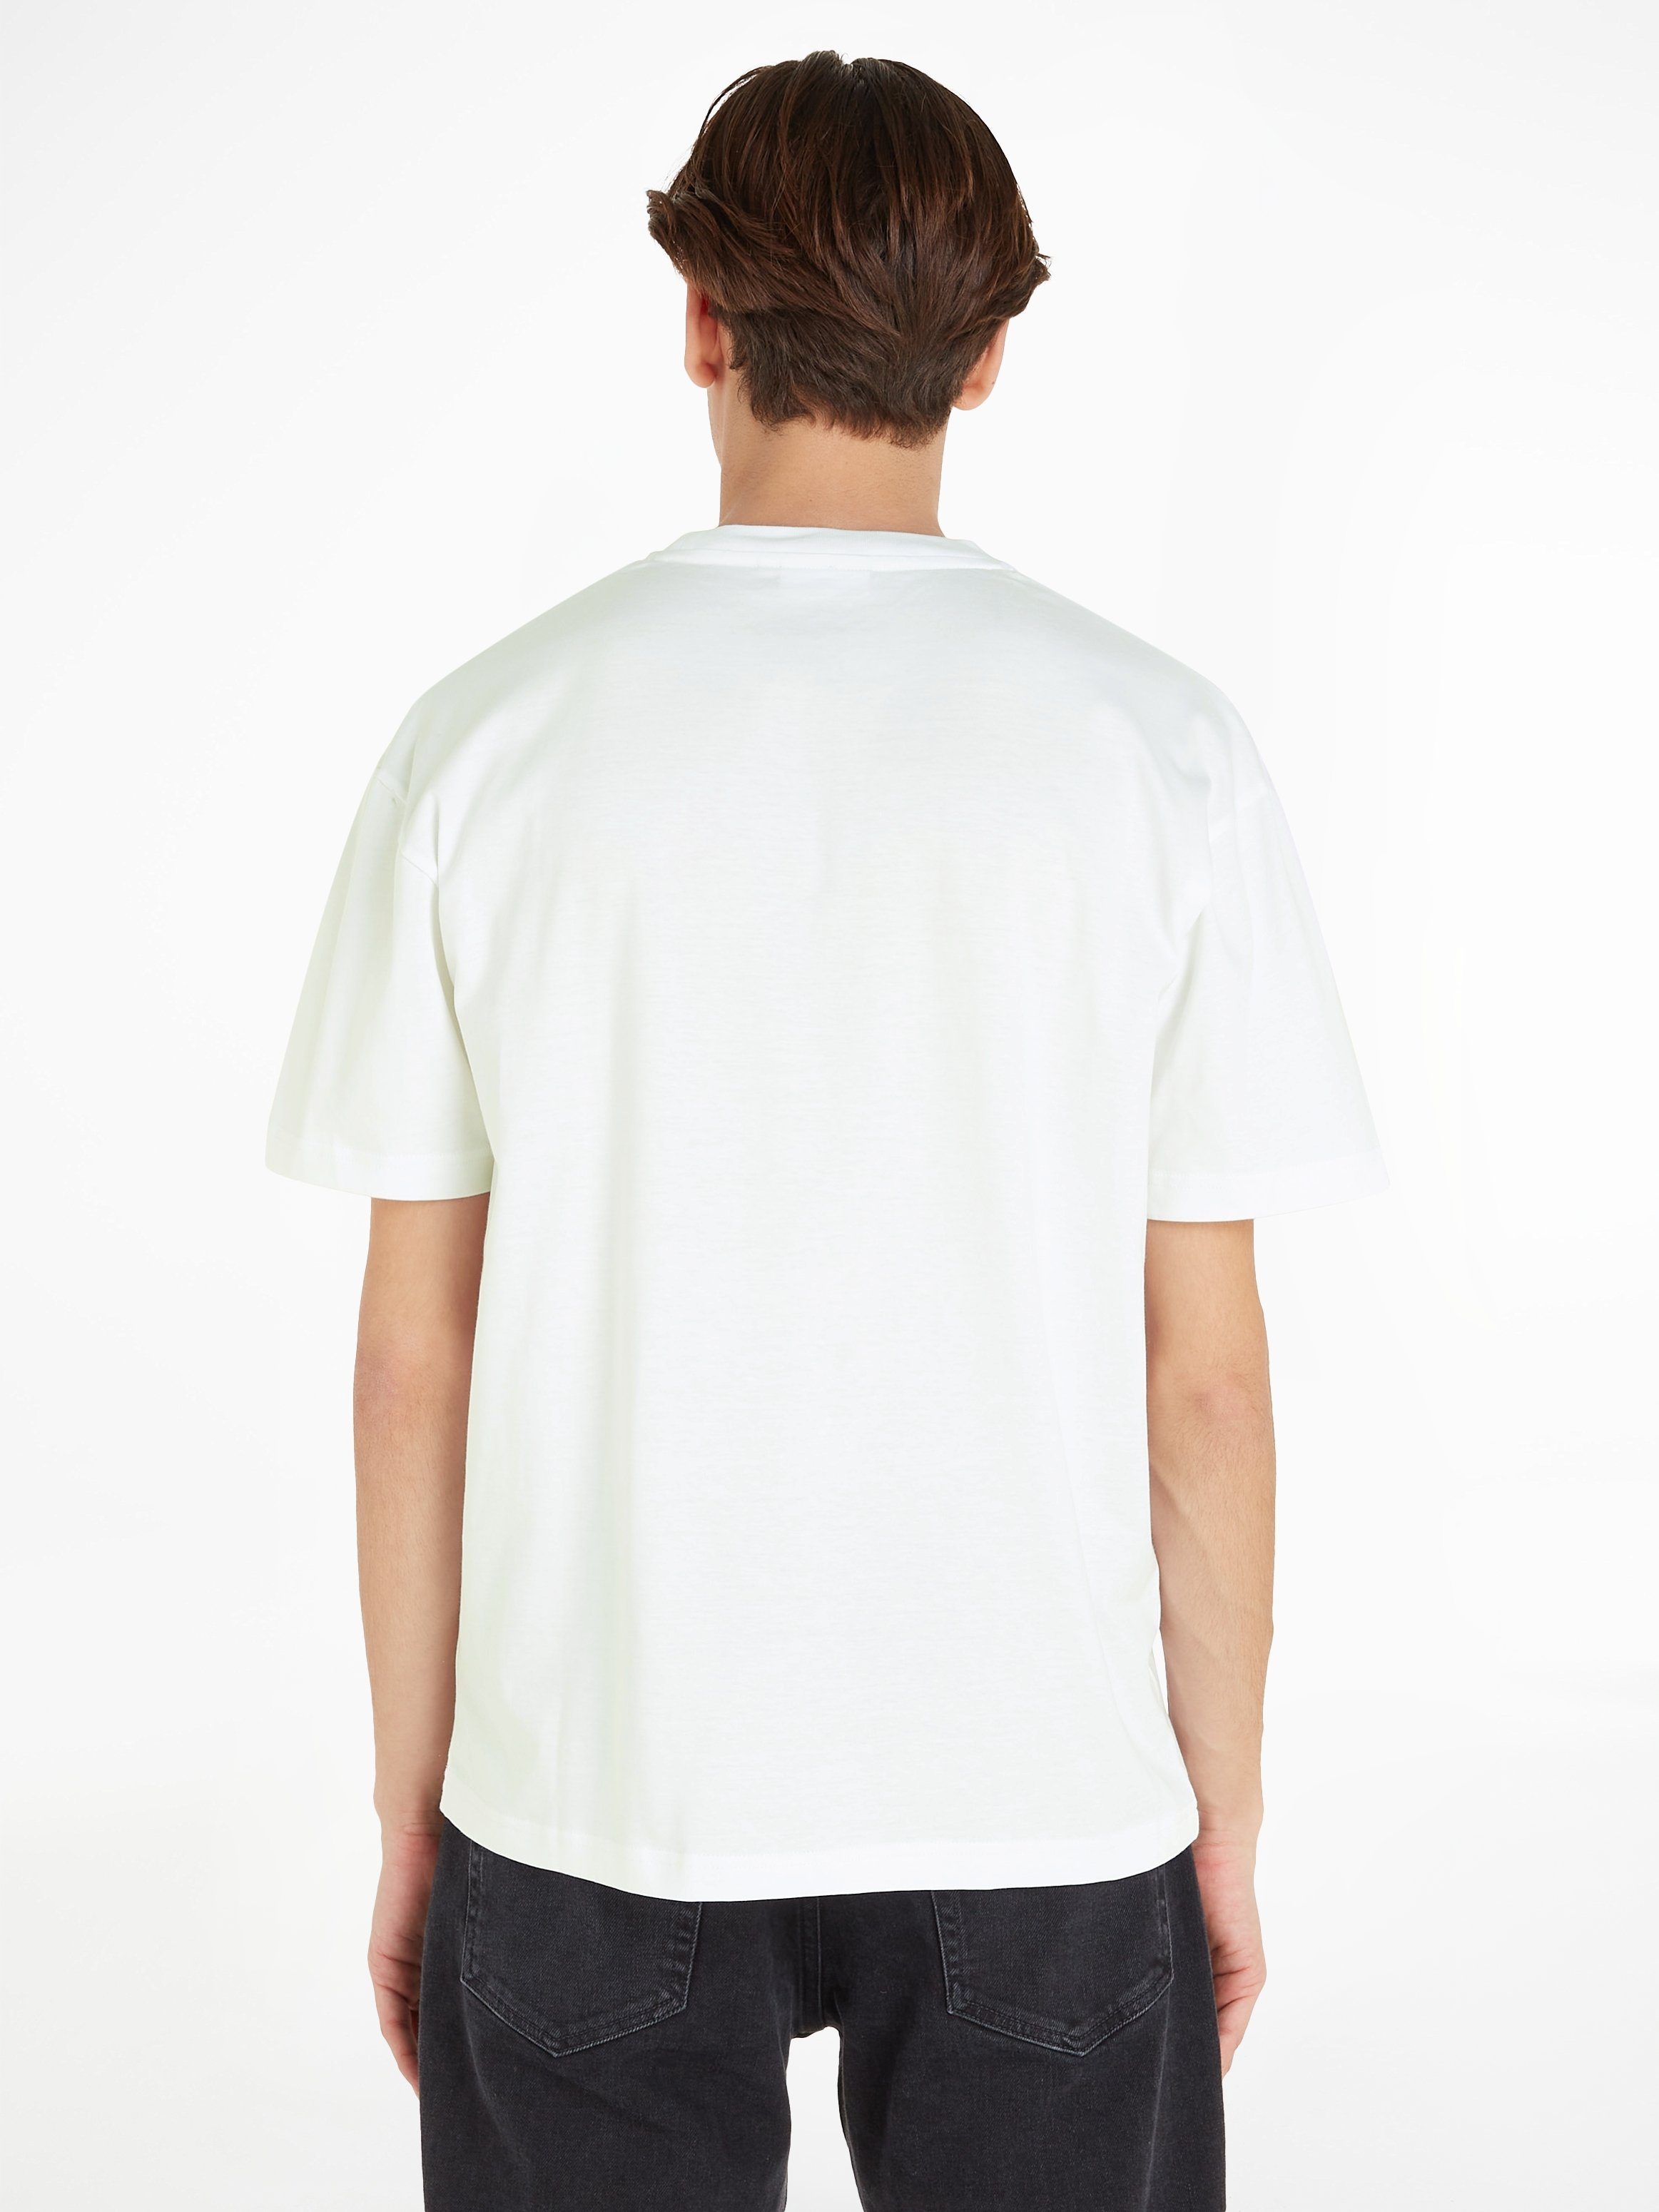 Calvin Klein Bright LOGO HERO aufgedrucktem Markenlabel T-SHIRT T-Shirt COMFORT White mit